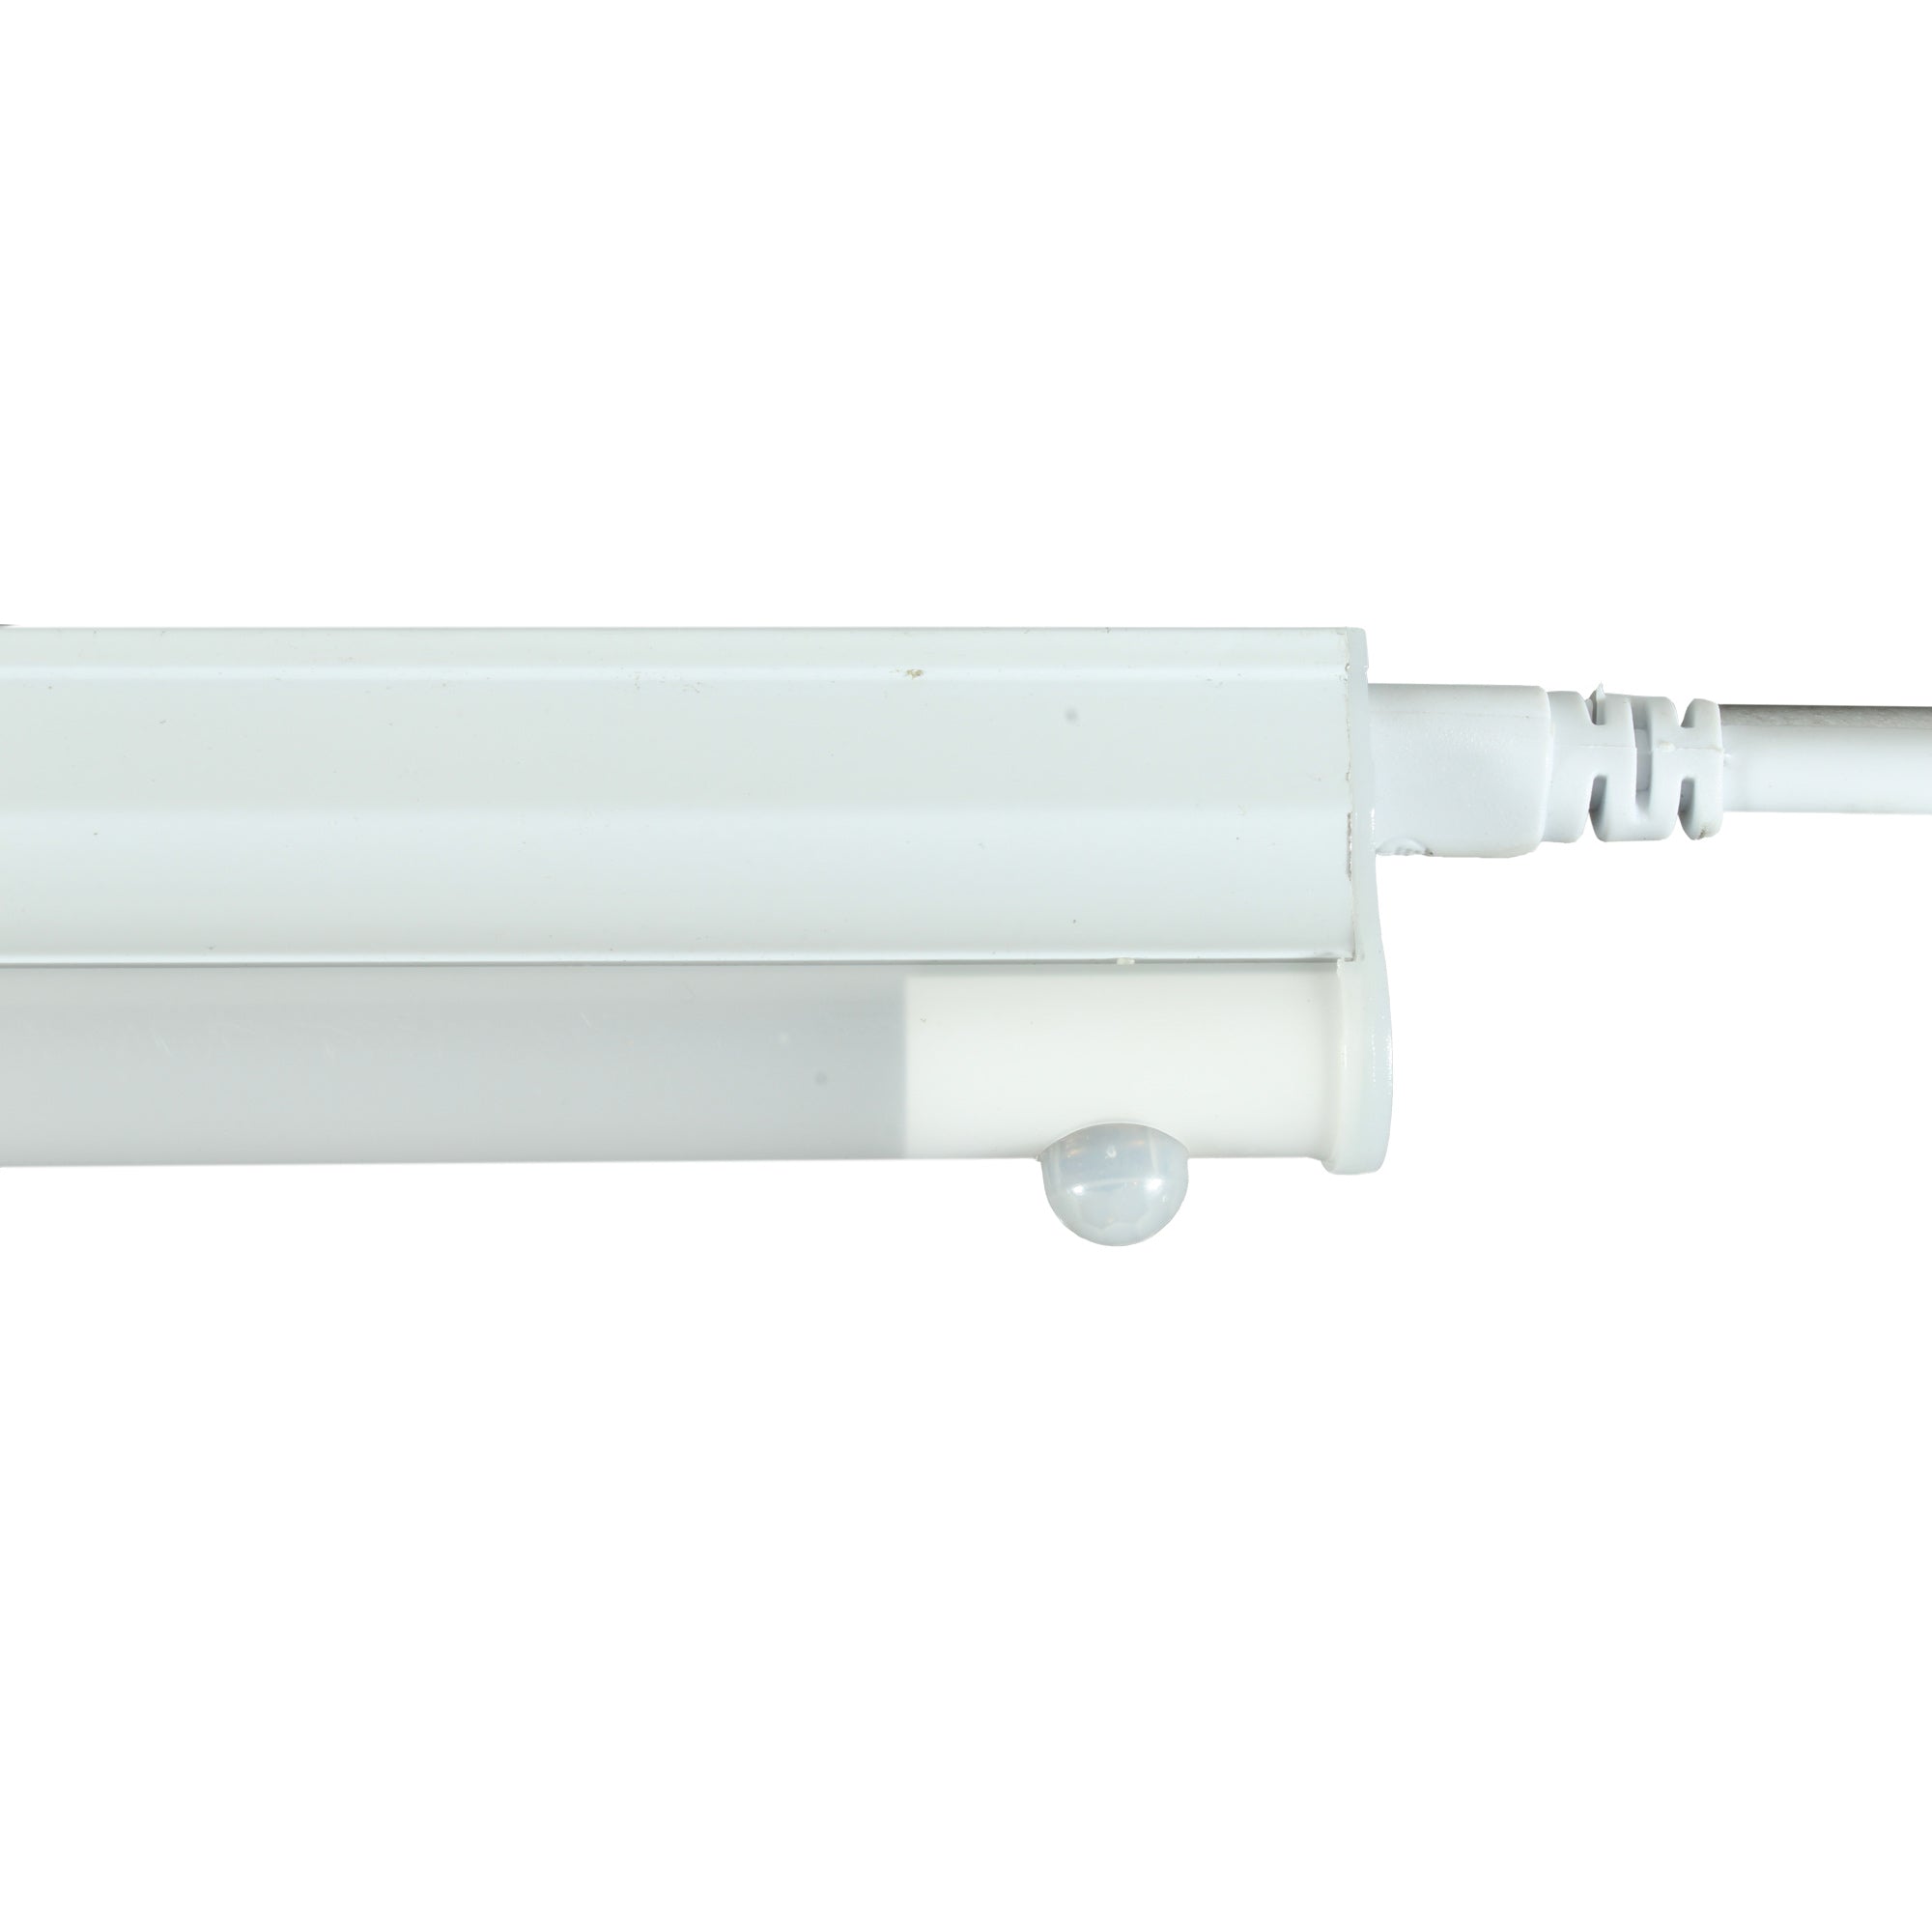 Luminario Lineal con Sensor de Movimiento Integrado, Modelo TL-1506.BSENS Eficiencia y Seguridad en Iluminación